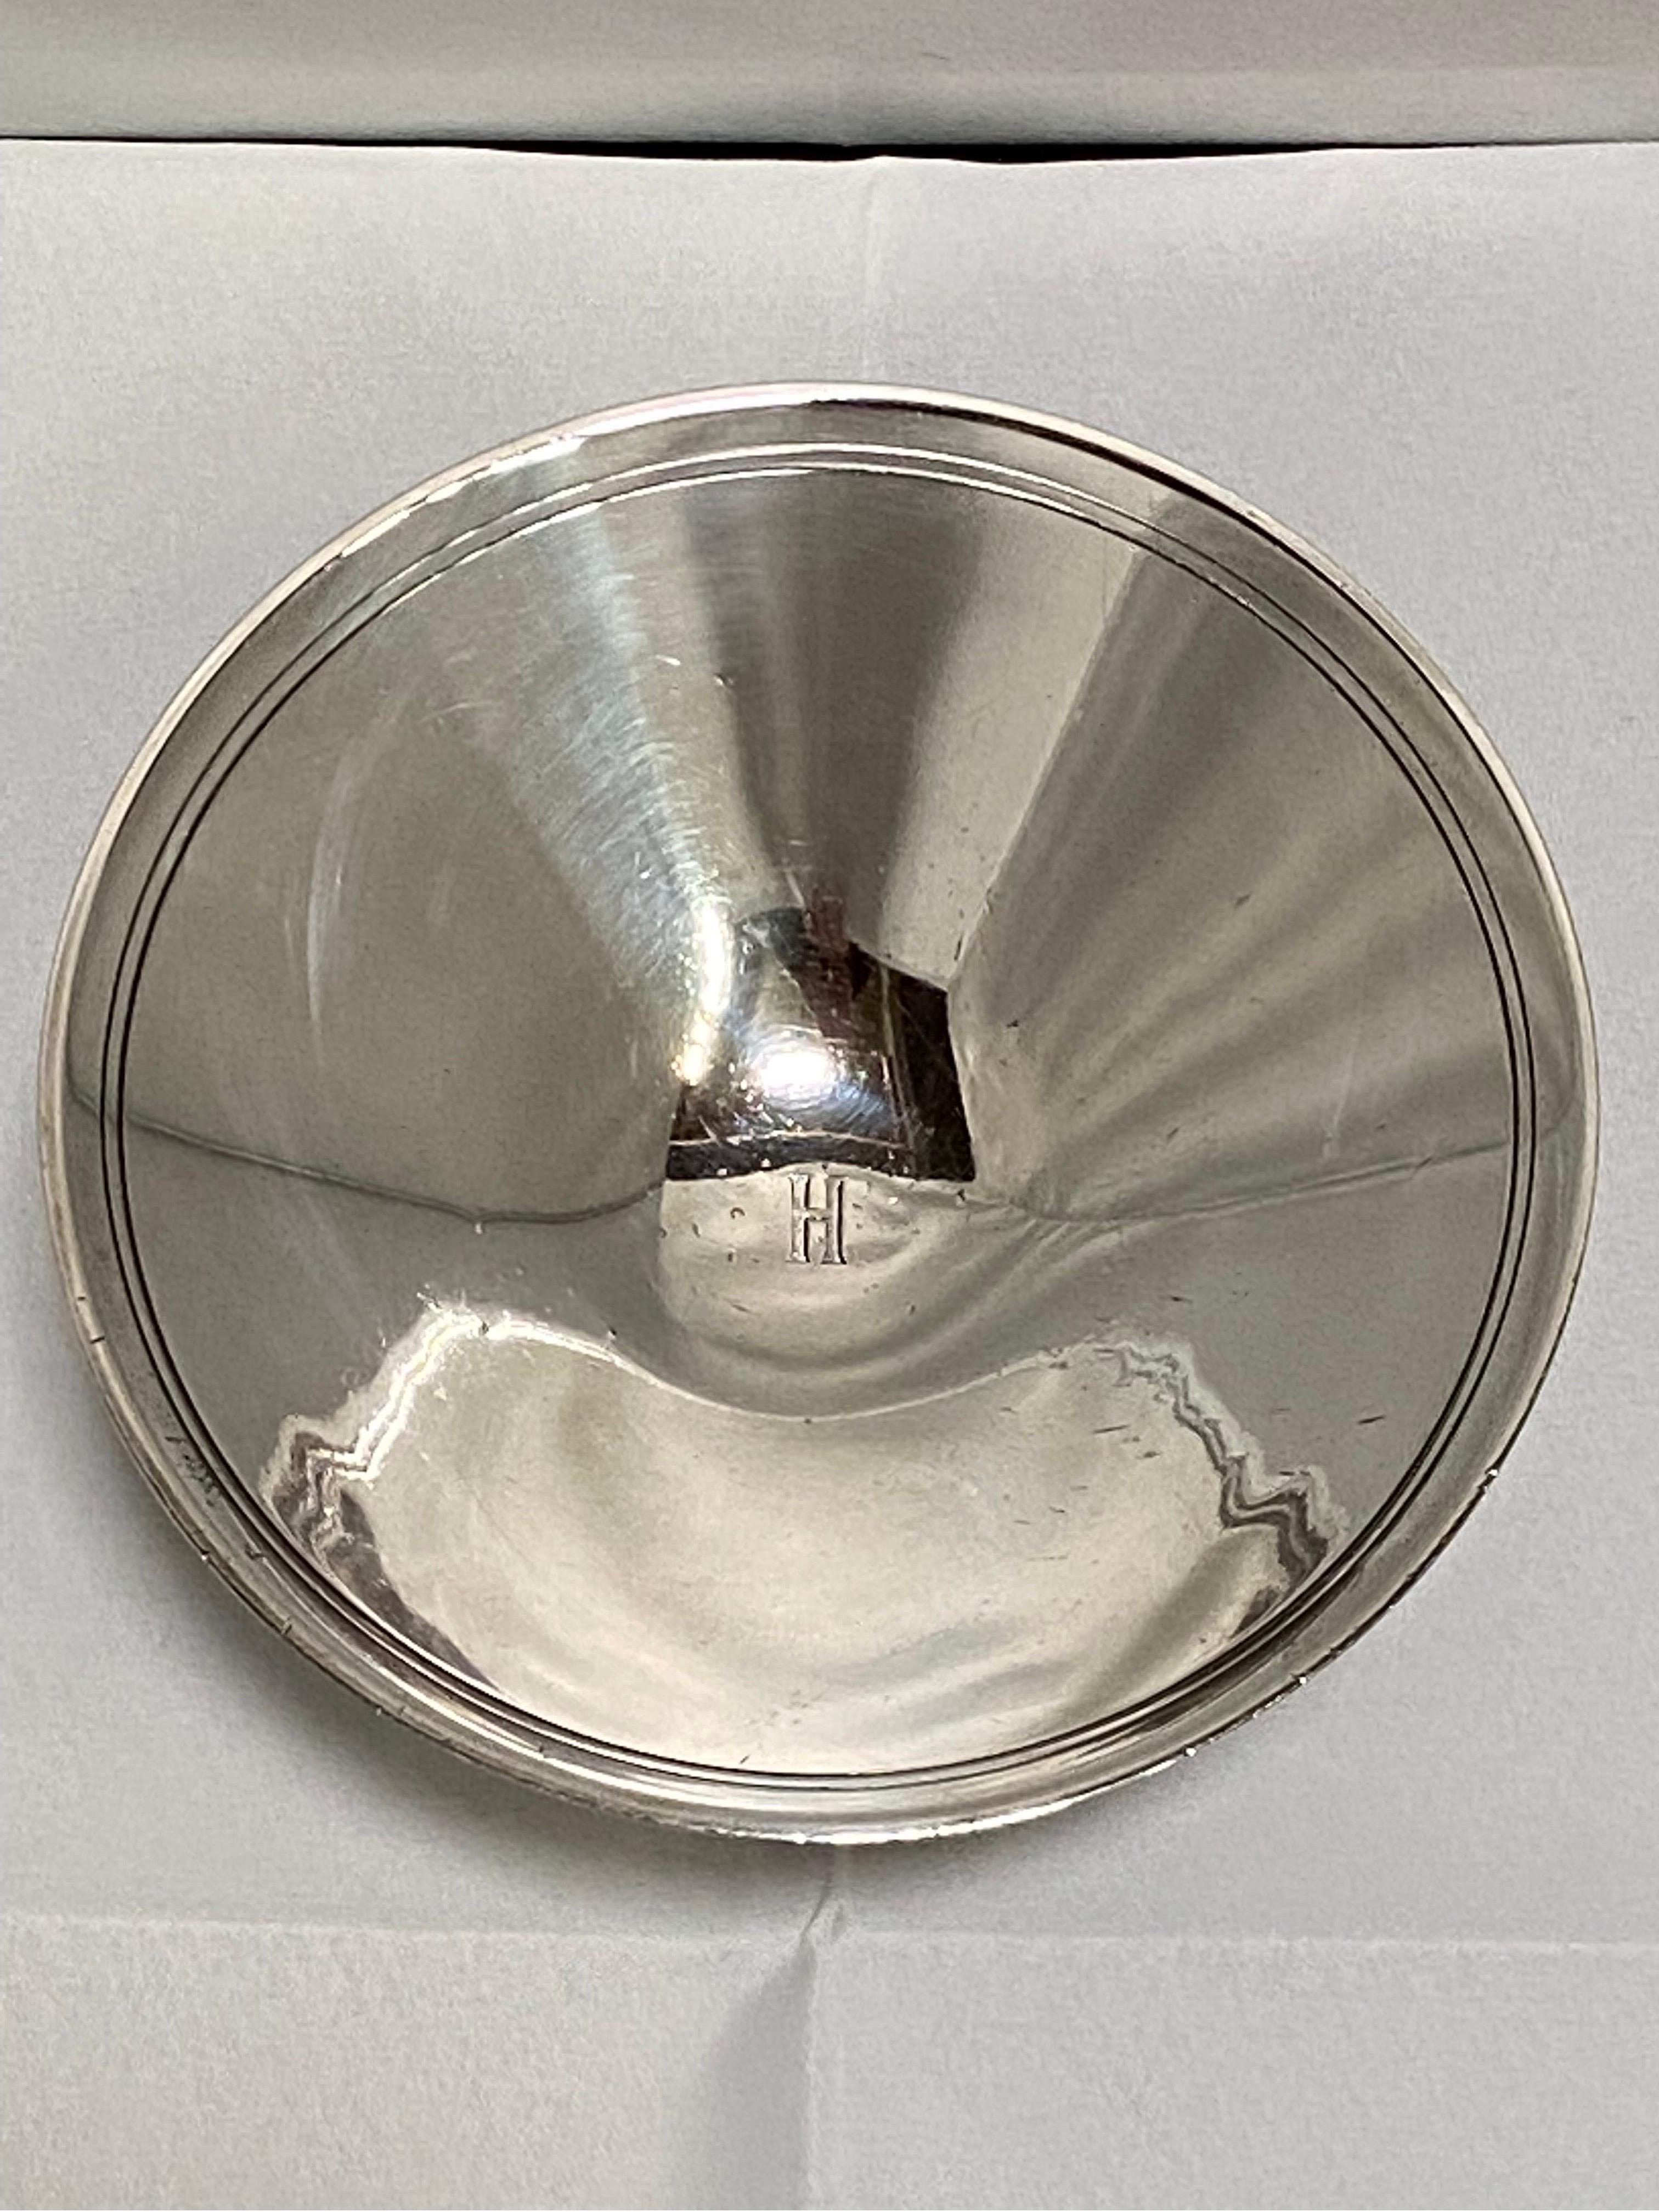 Ein Vintage Mitte des 20. Jahrhunderts, ca. 1940, Sterling Silber fußte Schüssel oder Kompott Schüssel von Tiffany & Co gemacht. Dieses Stück zeigt die Qualität und das Design, für die Tiffany seit der Gründung des Unternehmens im Jahr 1837 bekannt